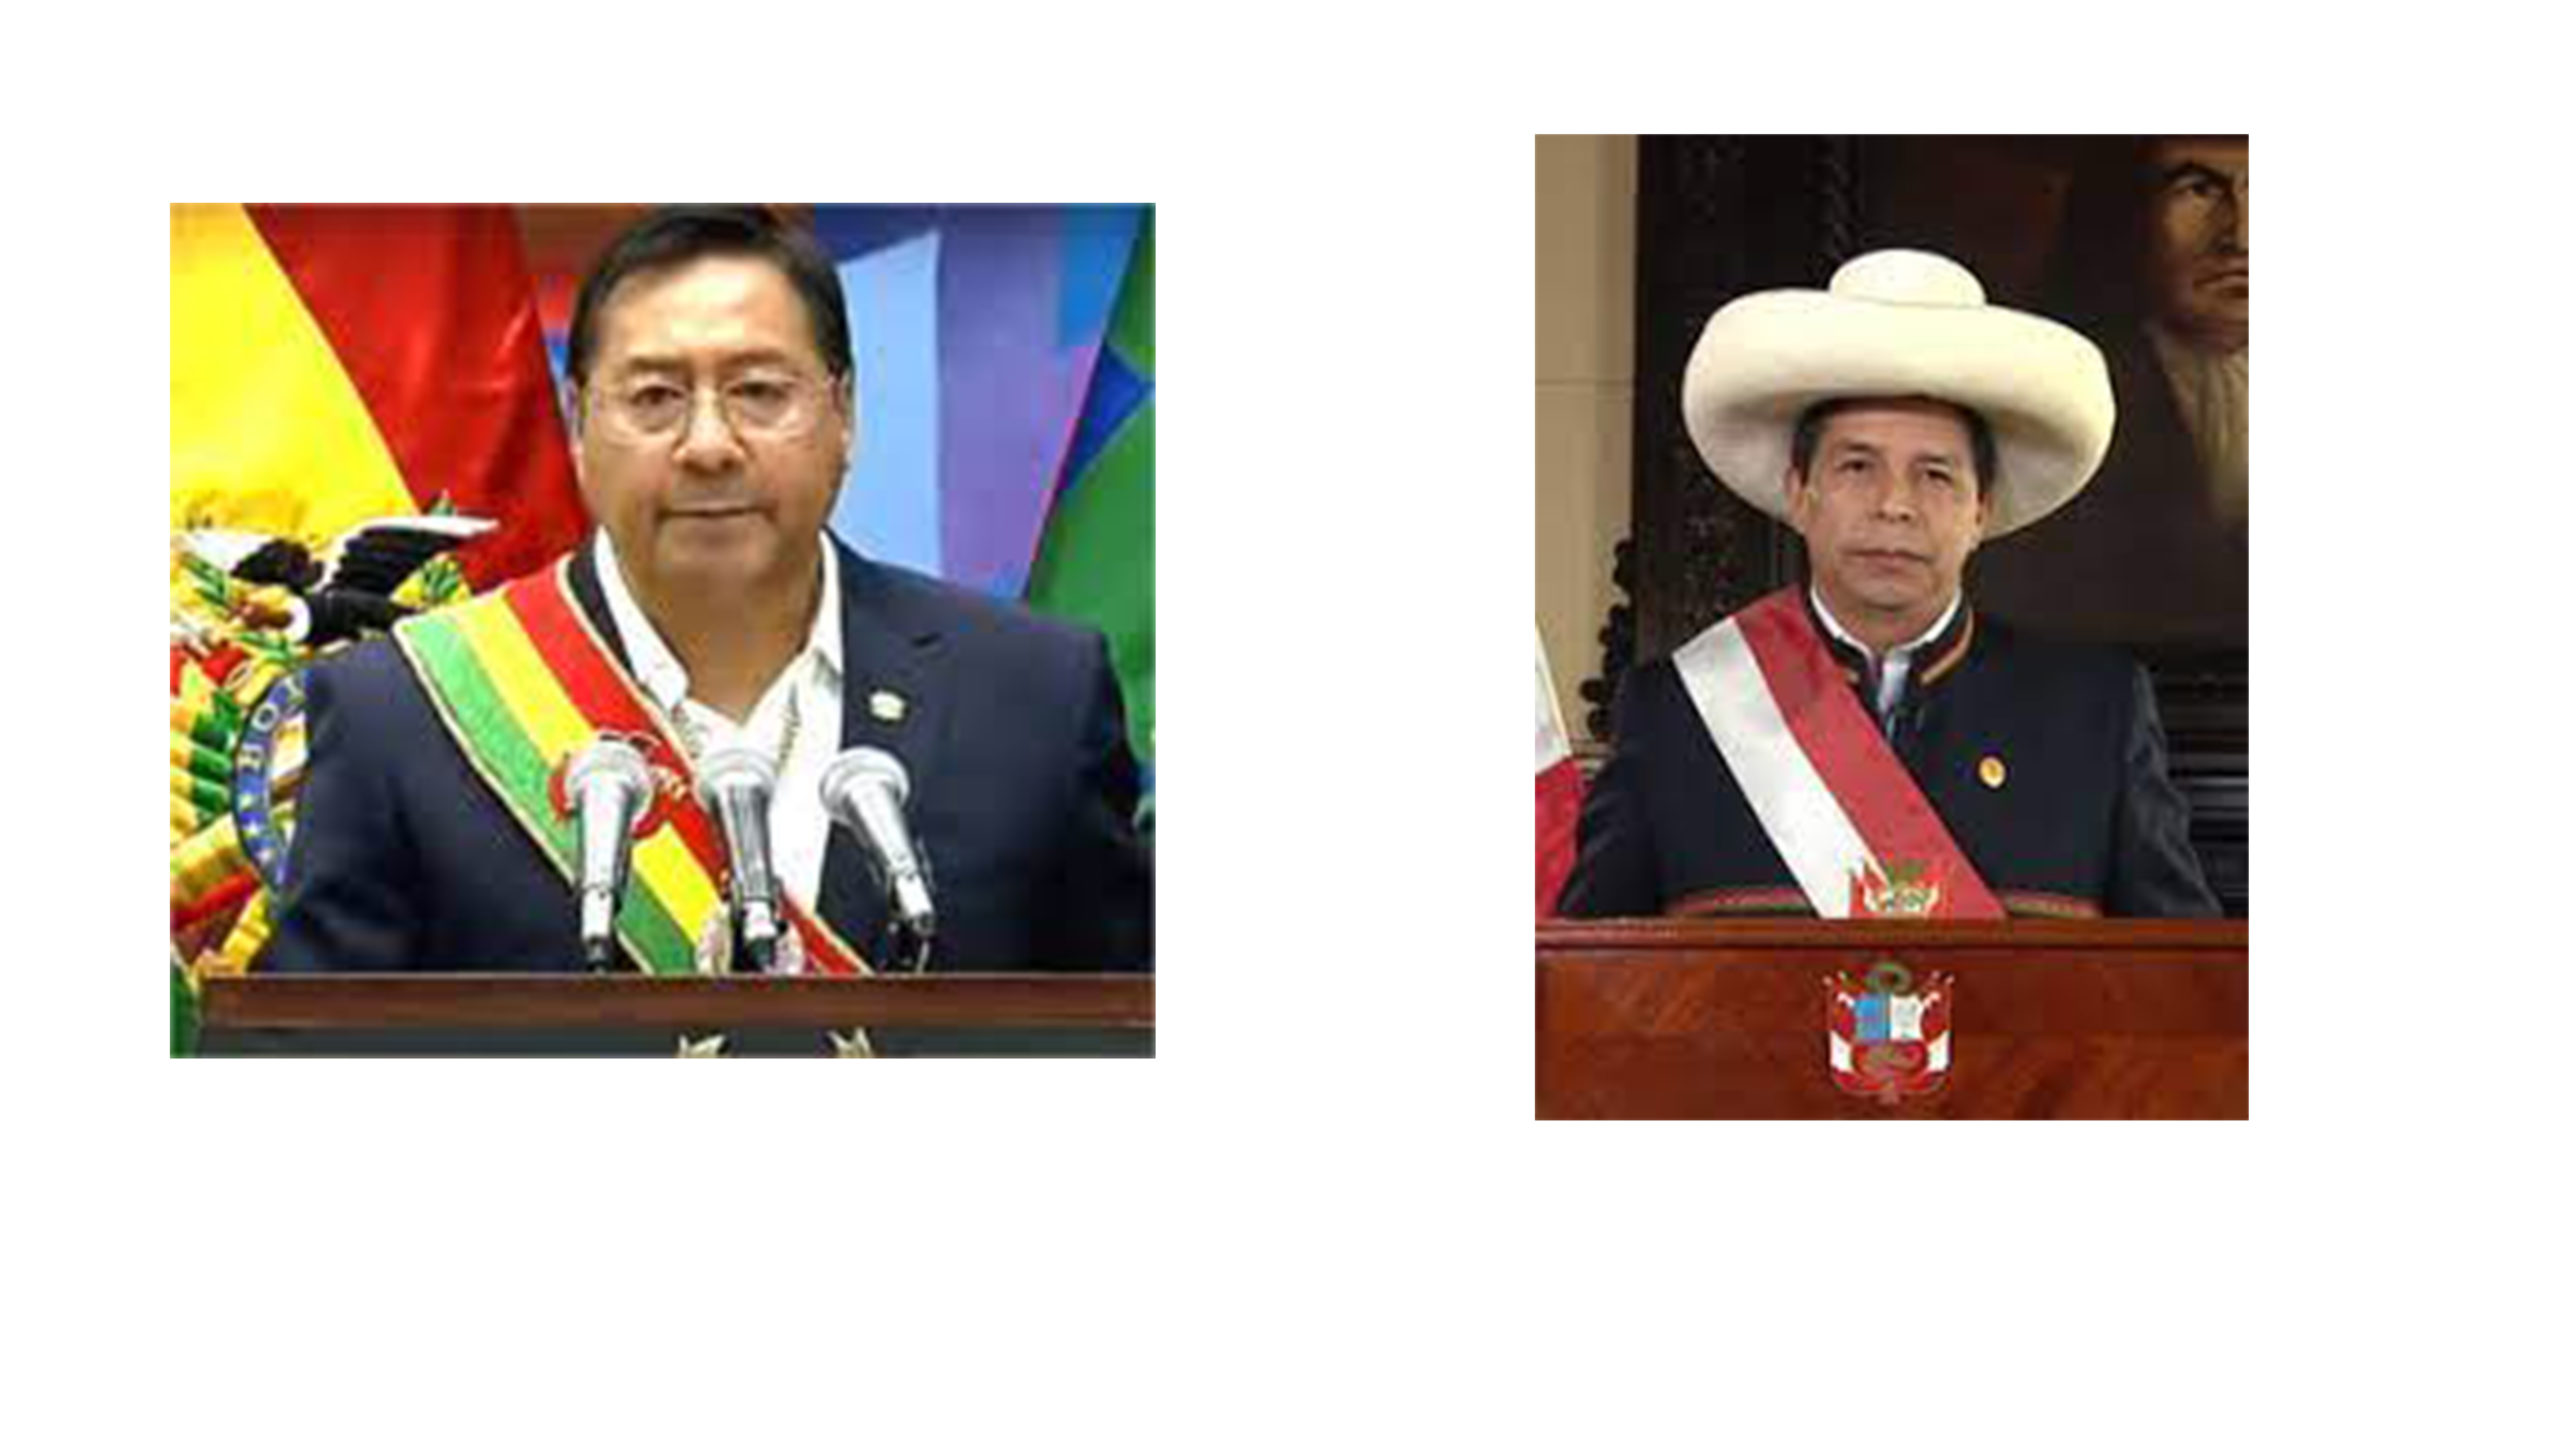 Perù. Il governo ha firmato accordi con Bolivia per costruire un gasdotto - Pipeline News -  - Gas Gas Naturale Gasdotti News